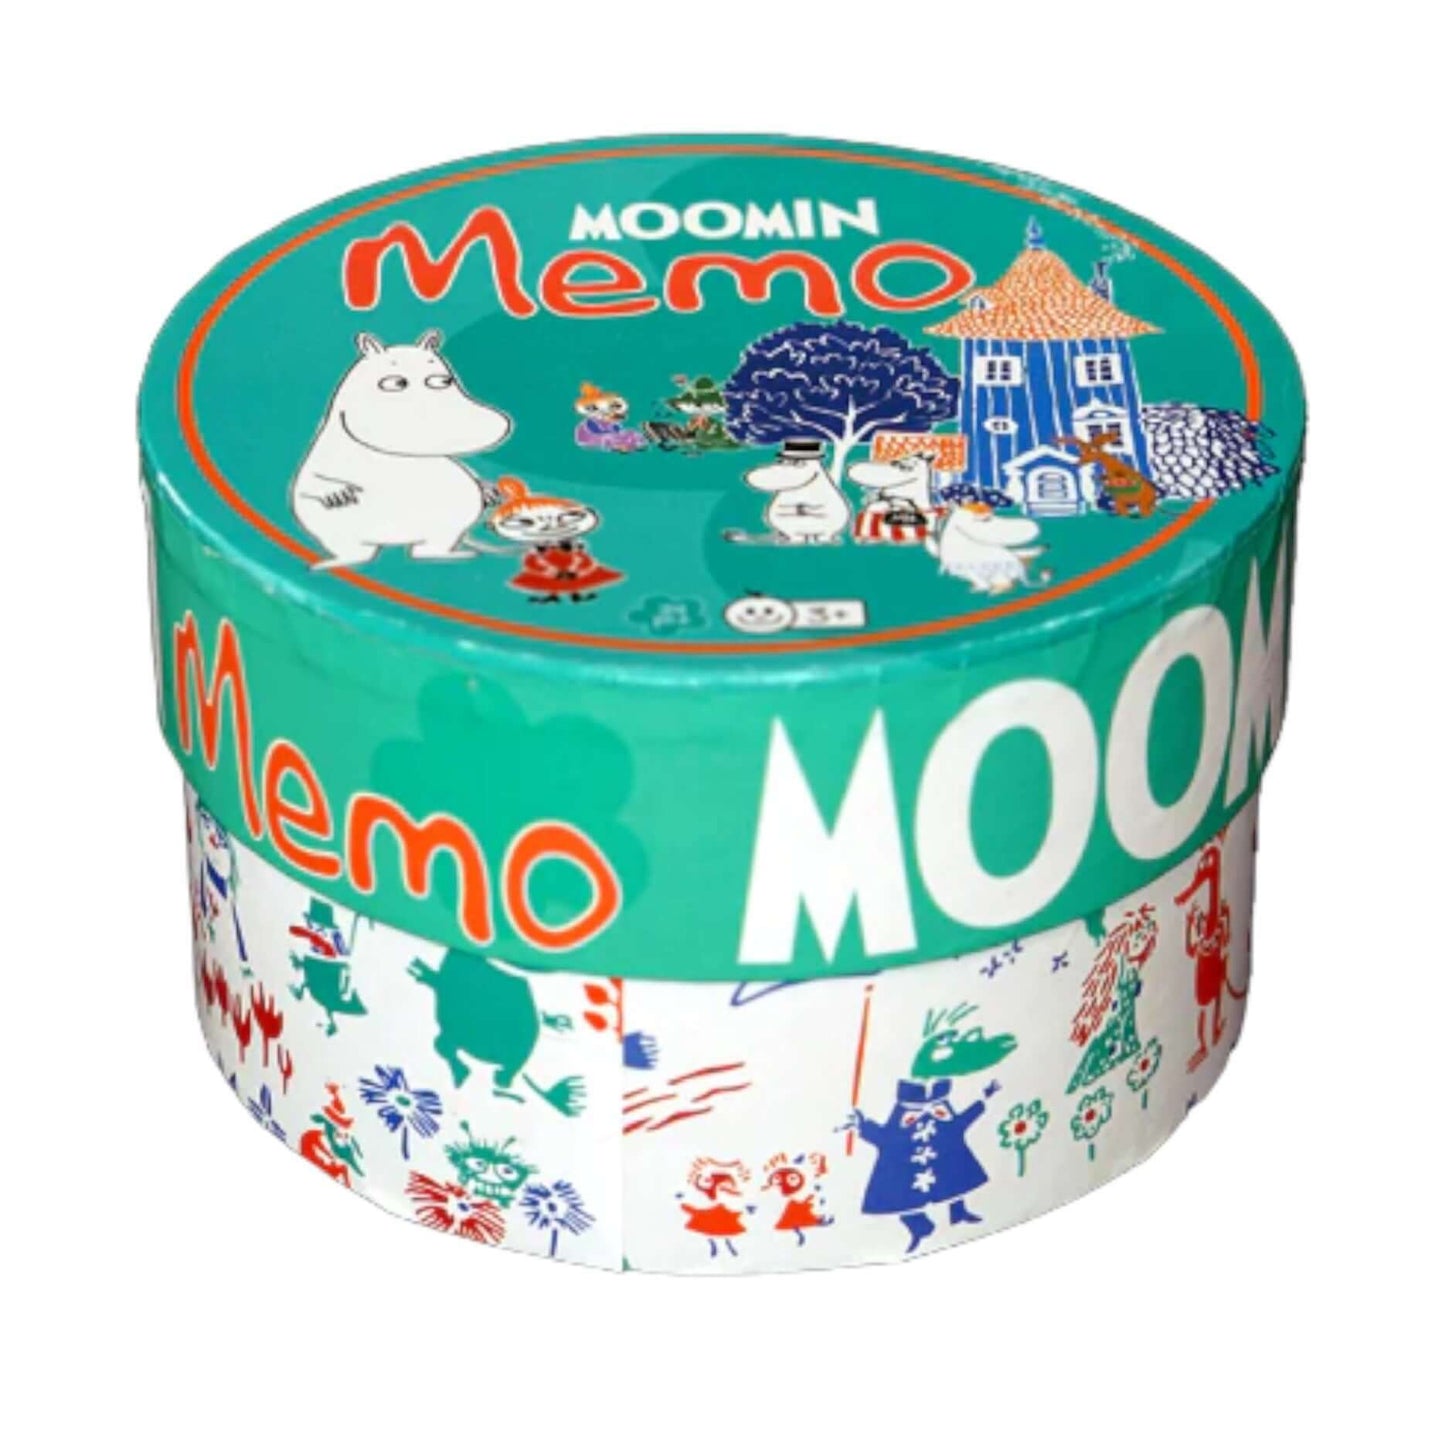 Moomin Memo Game